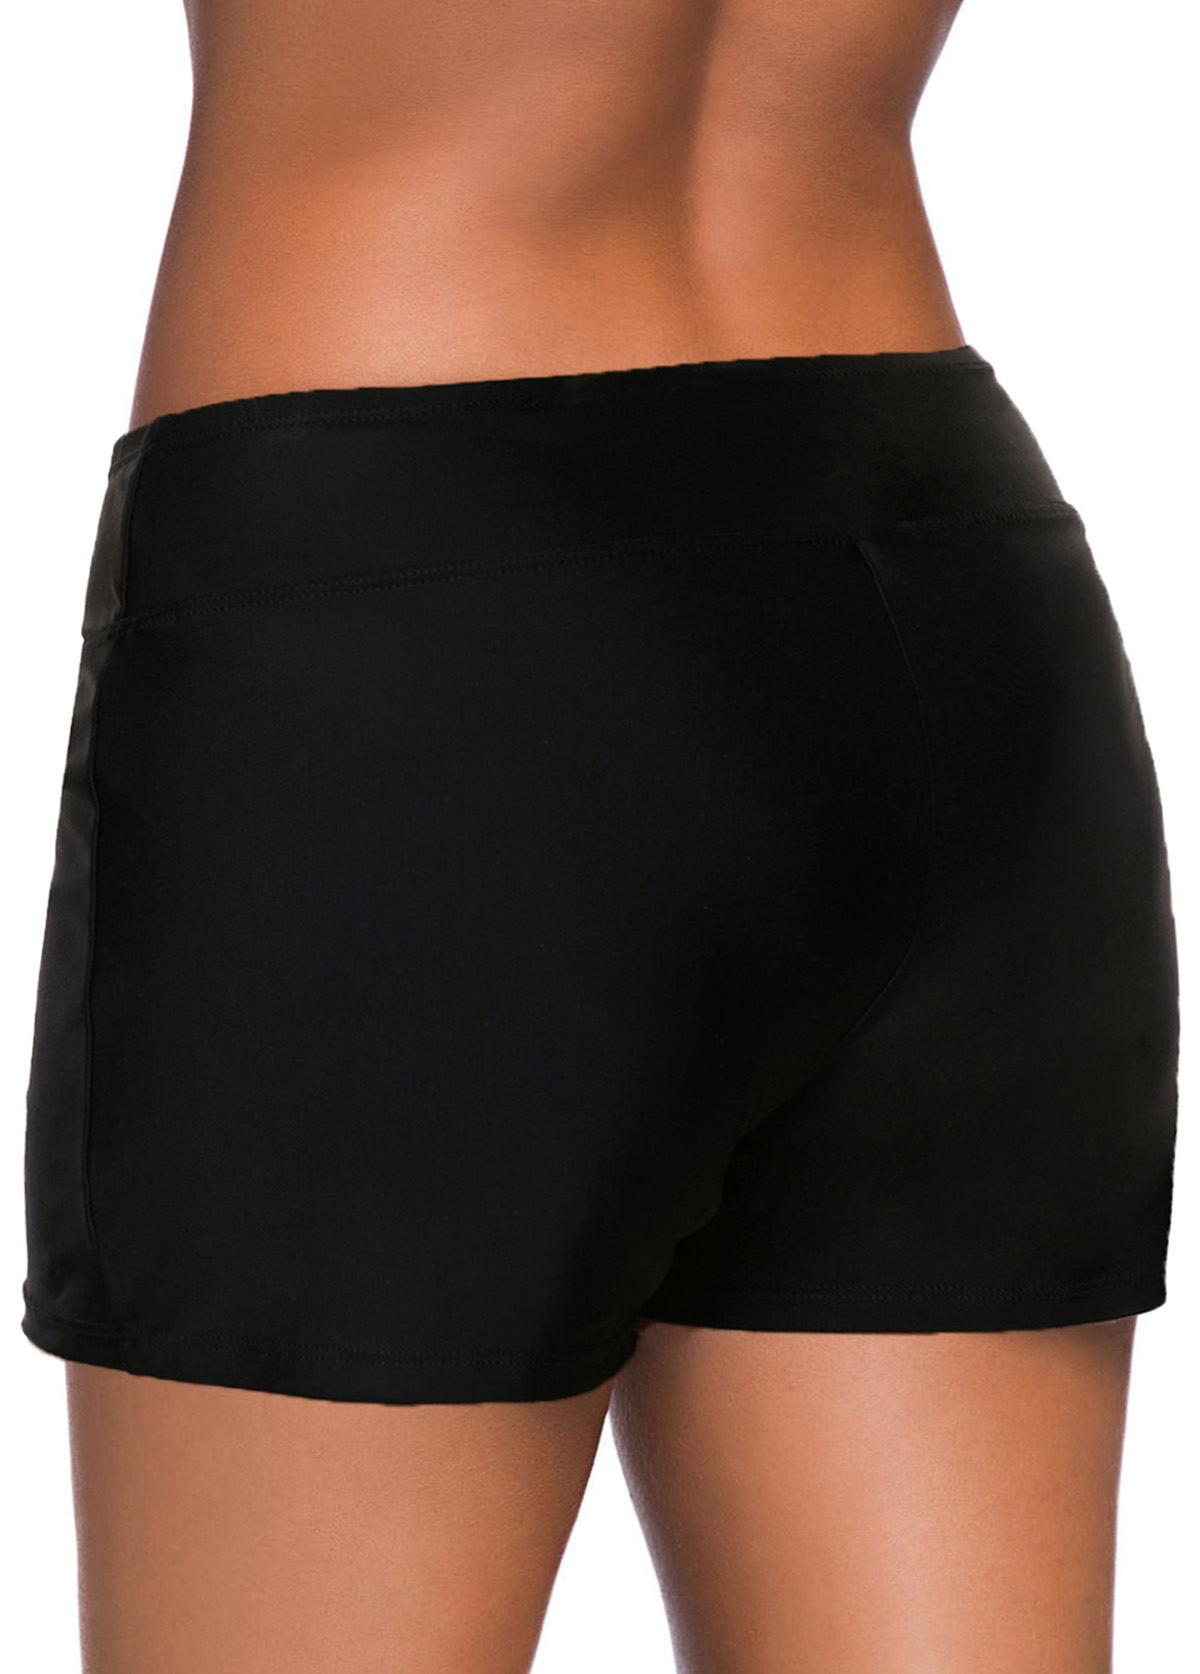 Low Waisted Plus Size Black Swim Shorts